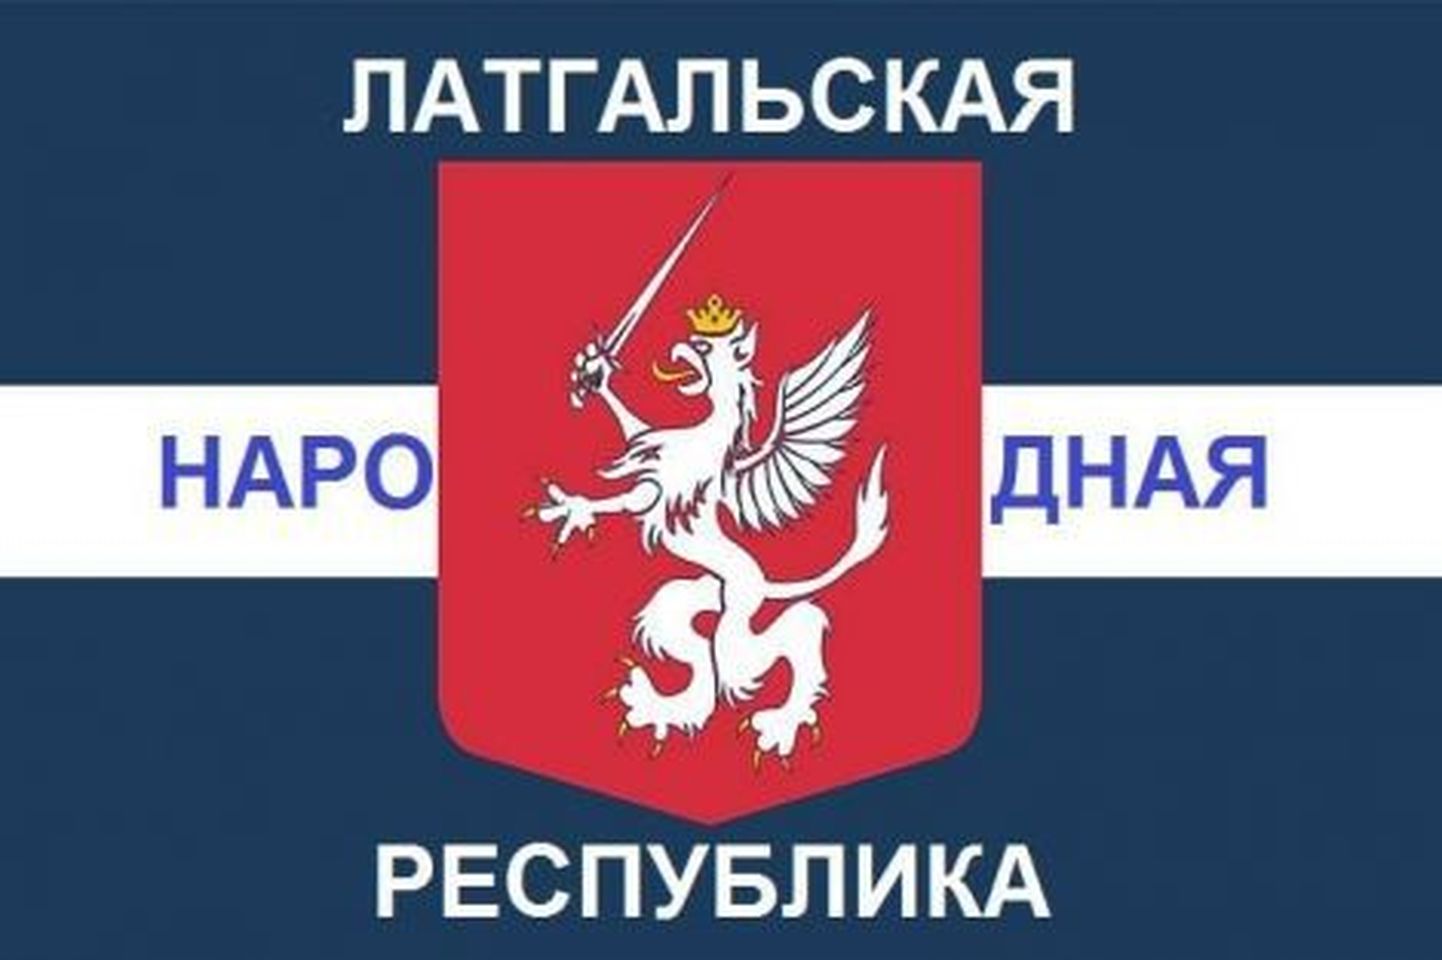 Опубликованный в Facebook  логотип "Латгальской народной республики".